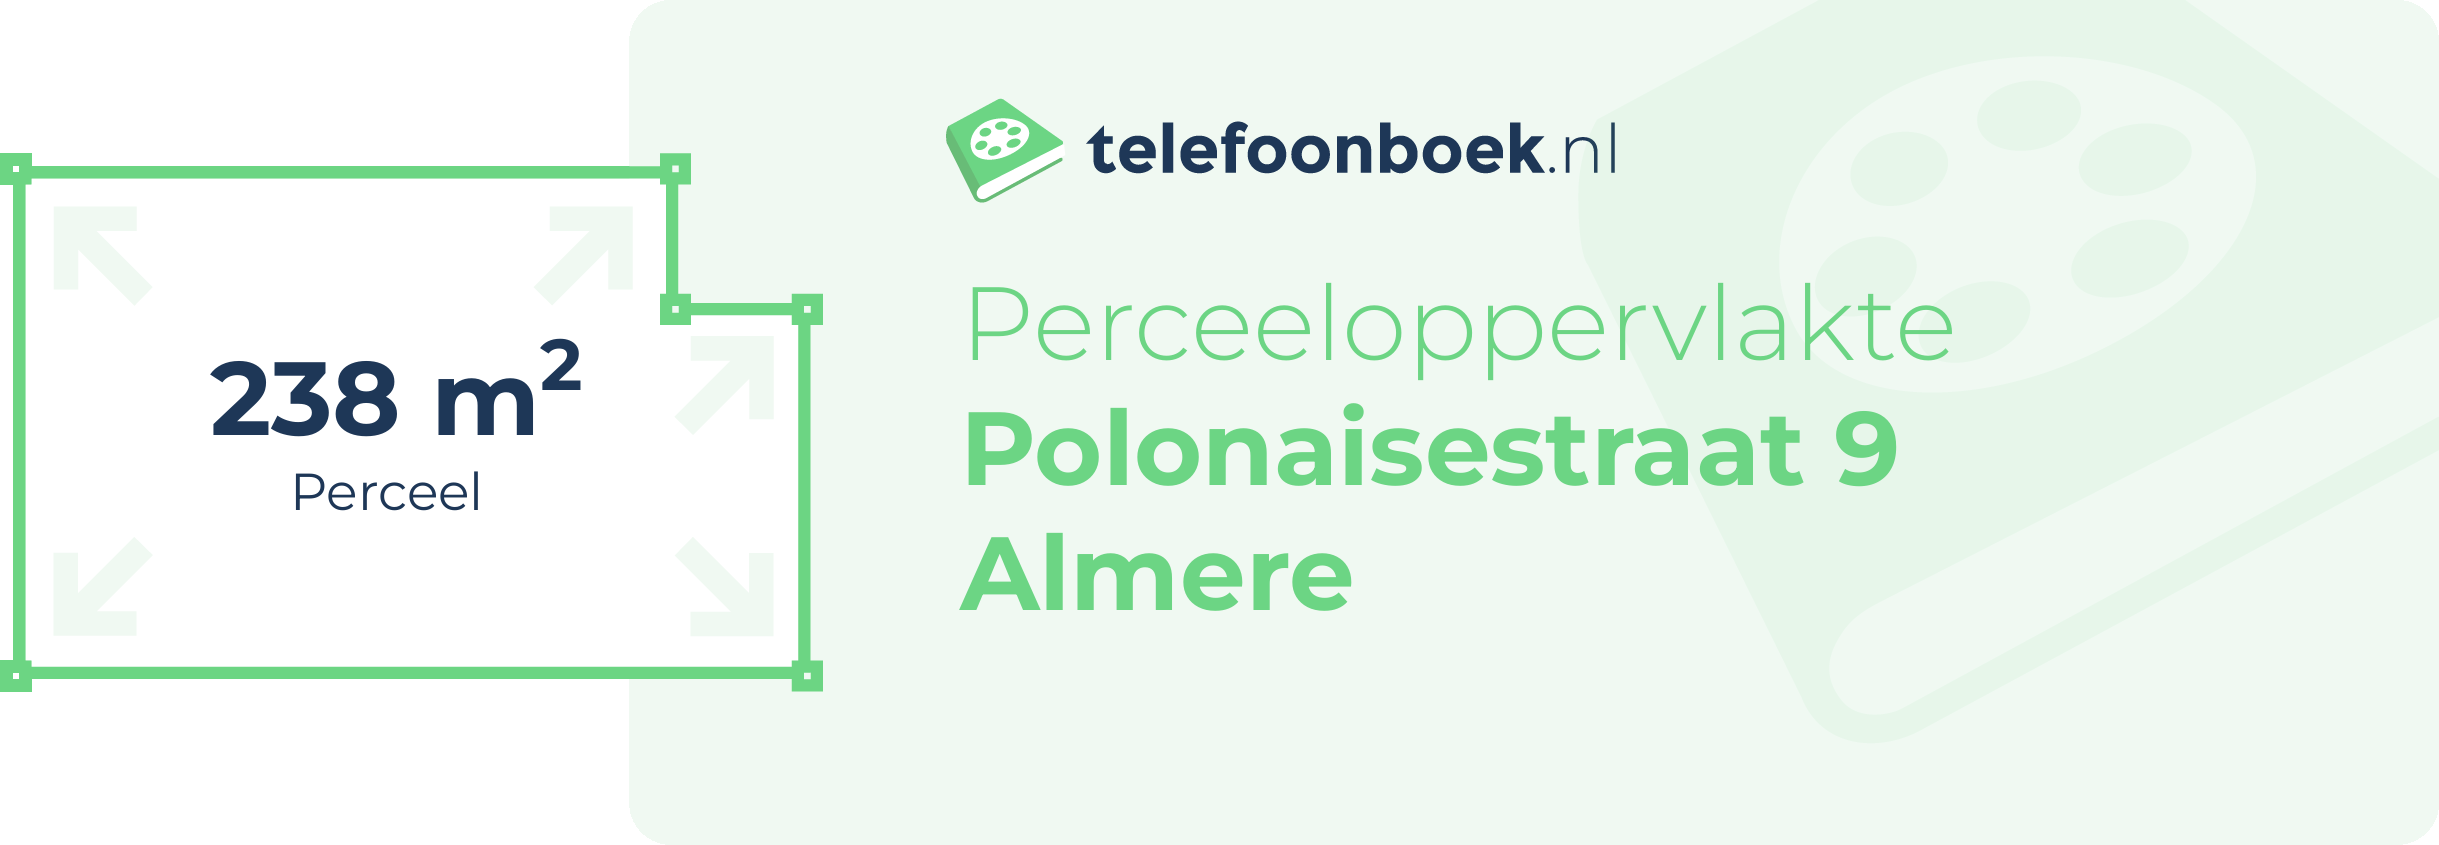 Perceeloppervlakte Polonaisestraat 9 Almere